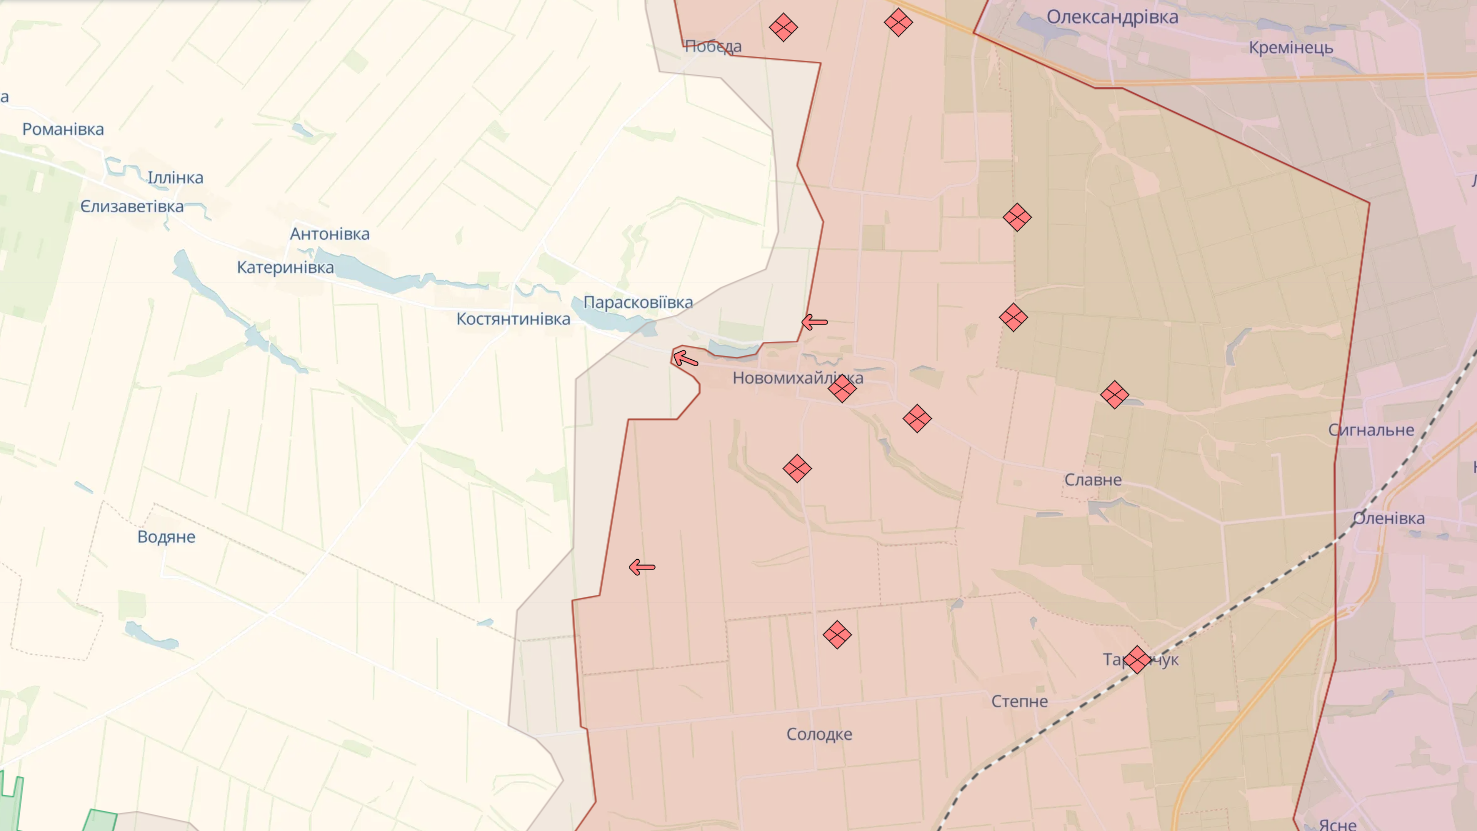 Siły Obronne wycofały się z Berdyczy, Semeniwki i Nowomychajliwki w obwodzie donieckim. Mapa